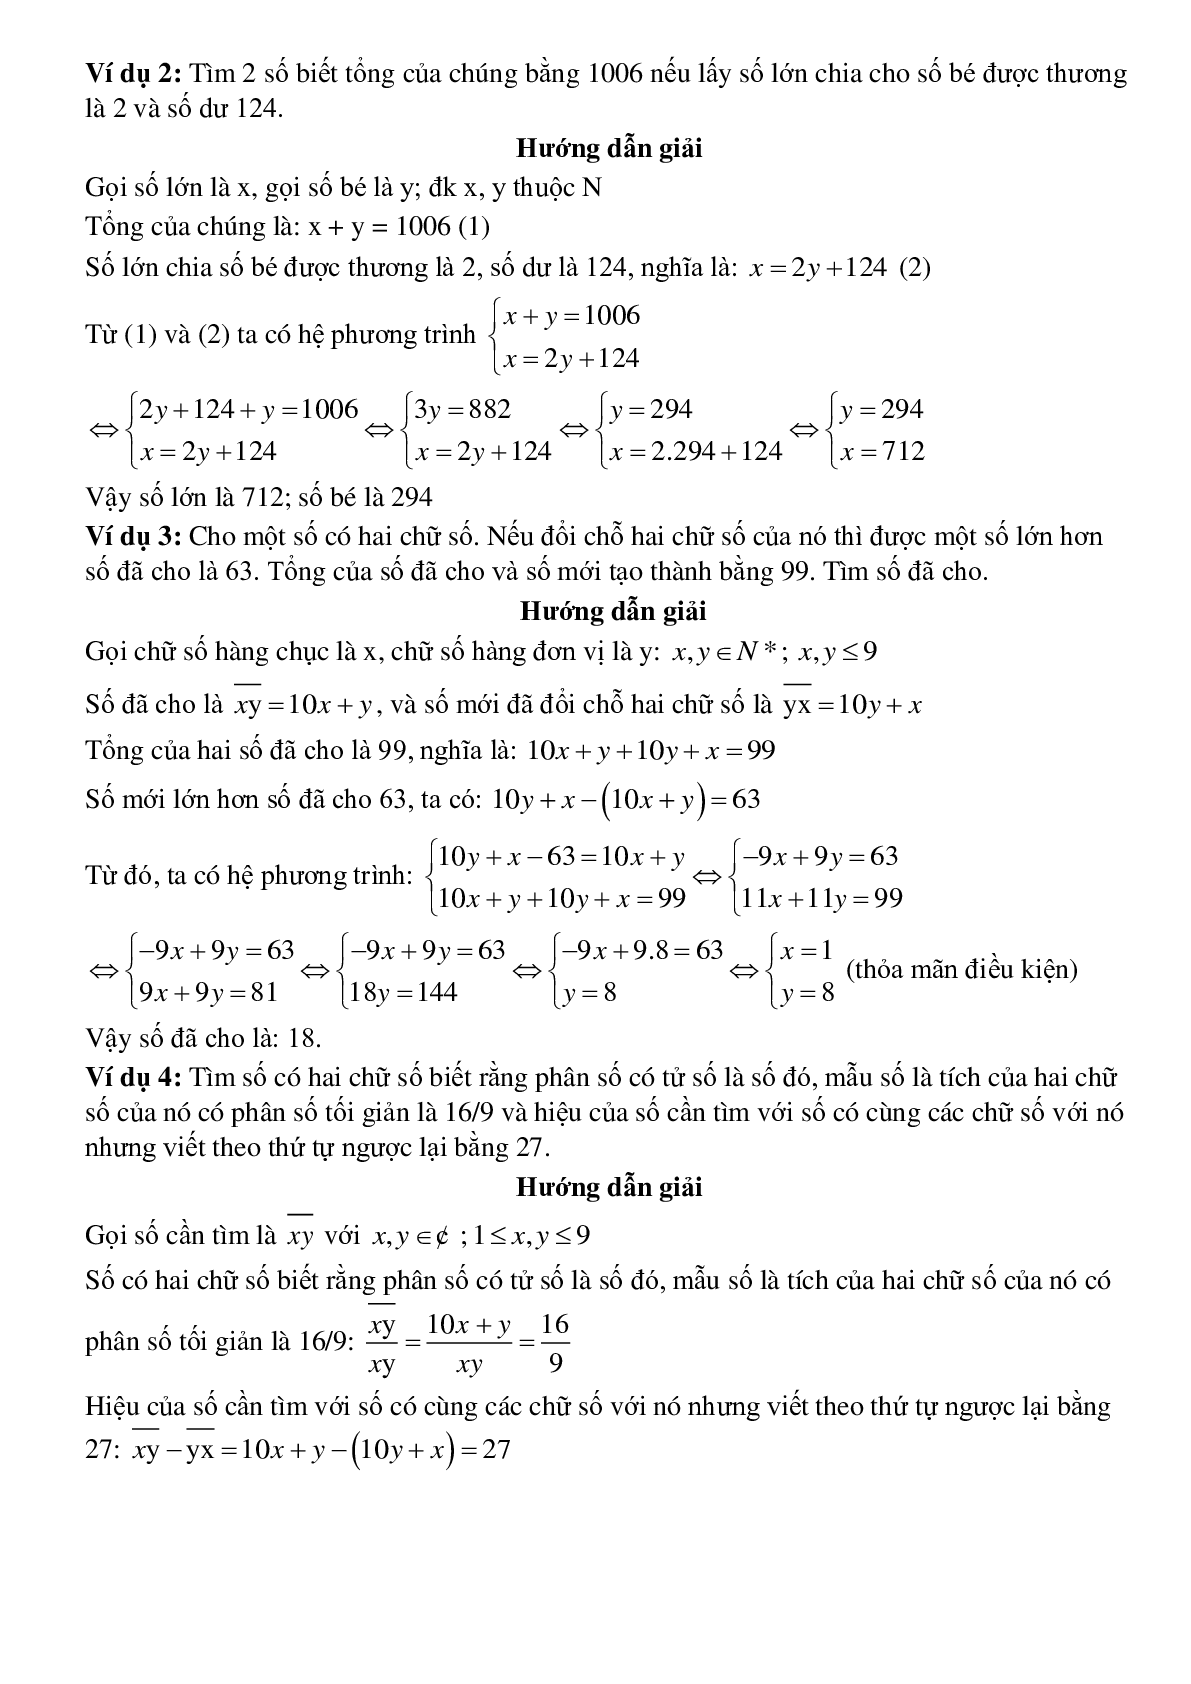 Giải bài toán bằng cách lập phương trình, hệ phương trình - Bài toán lập số, tìm số (trang 2)